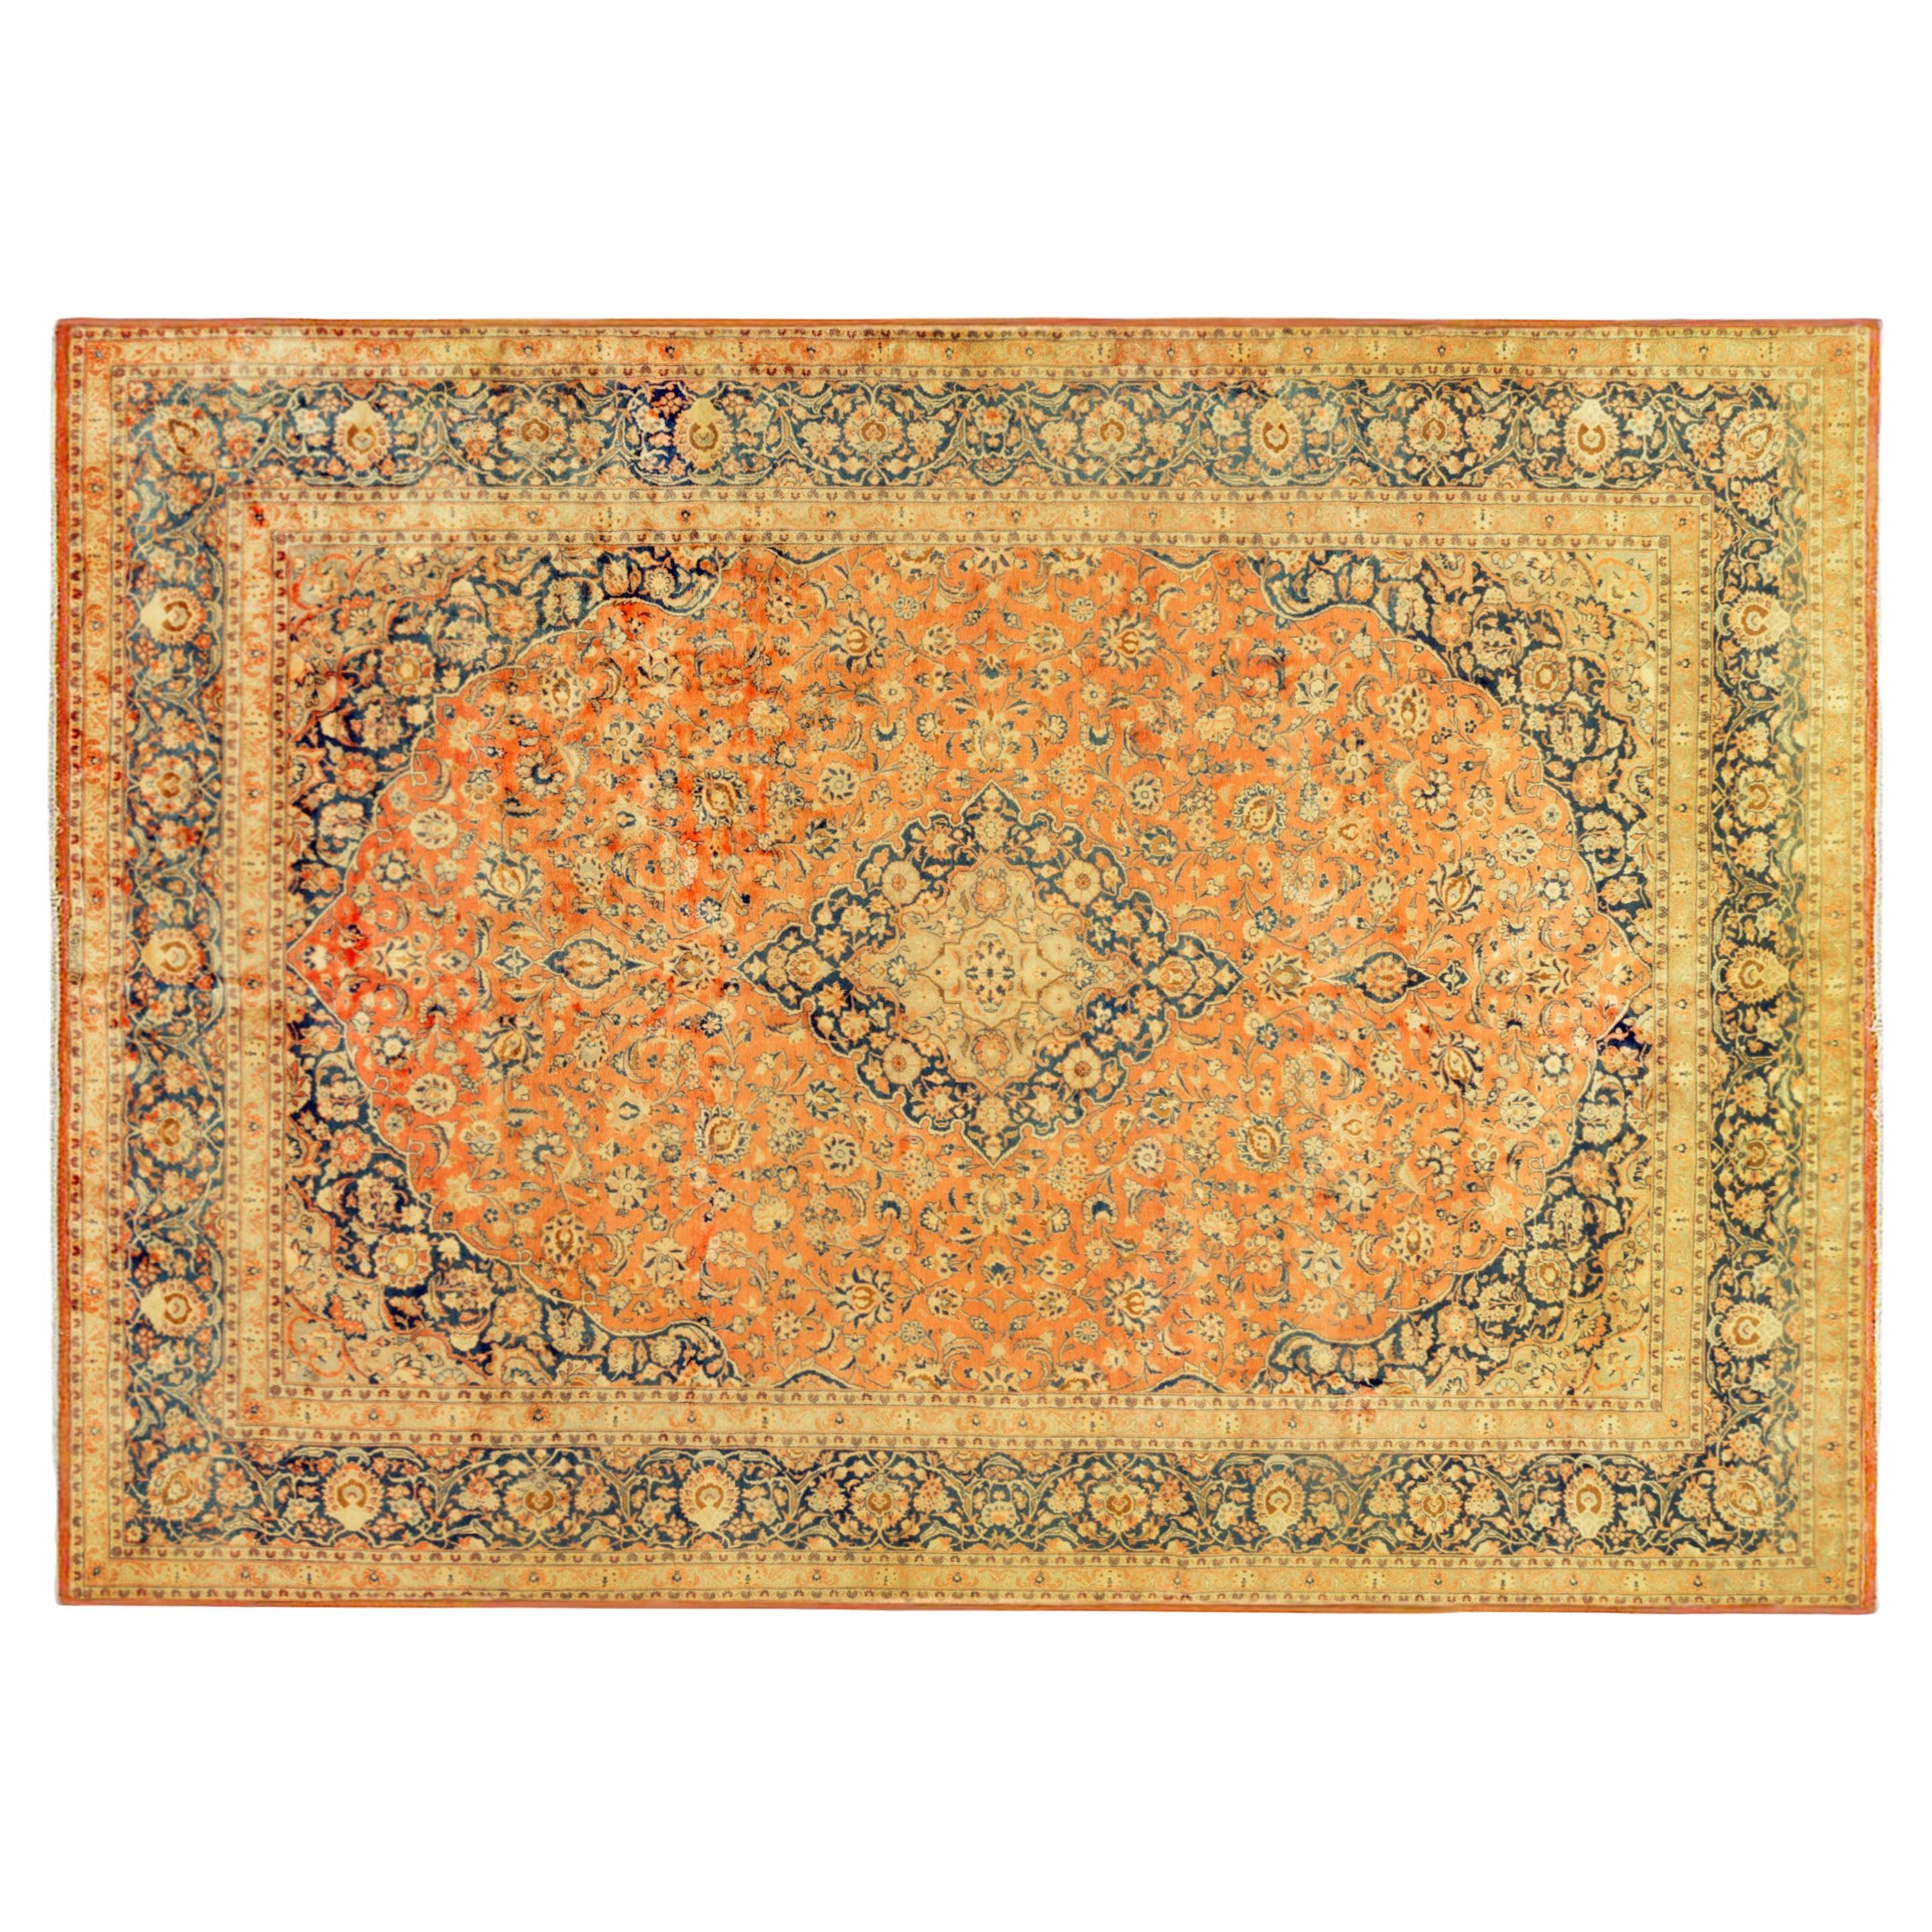 Persischer Kashan- Orientalischer Teppich im Vintage-Stil, mit Medaillon und weichen Farben